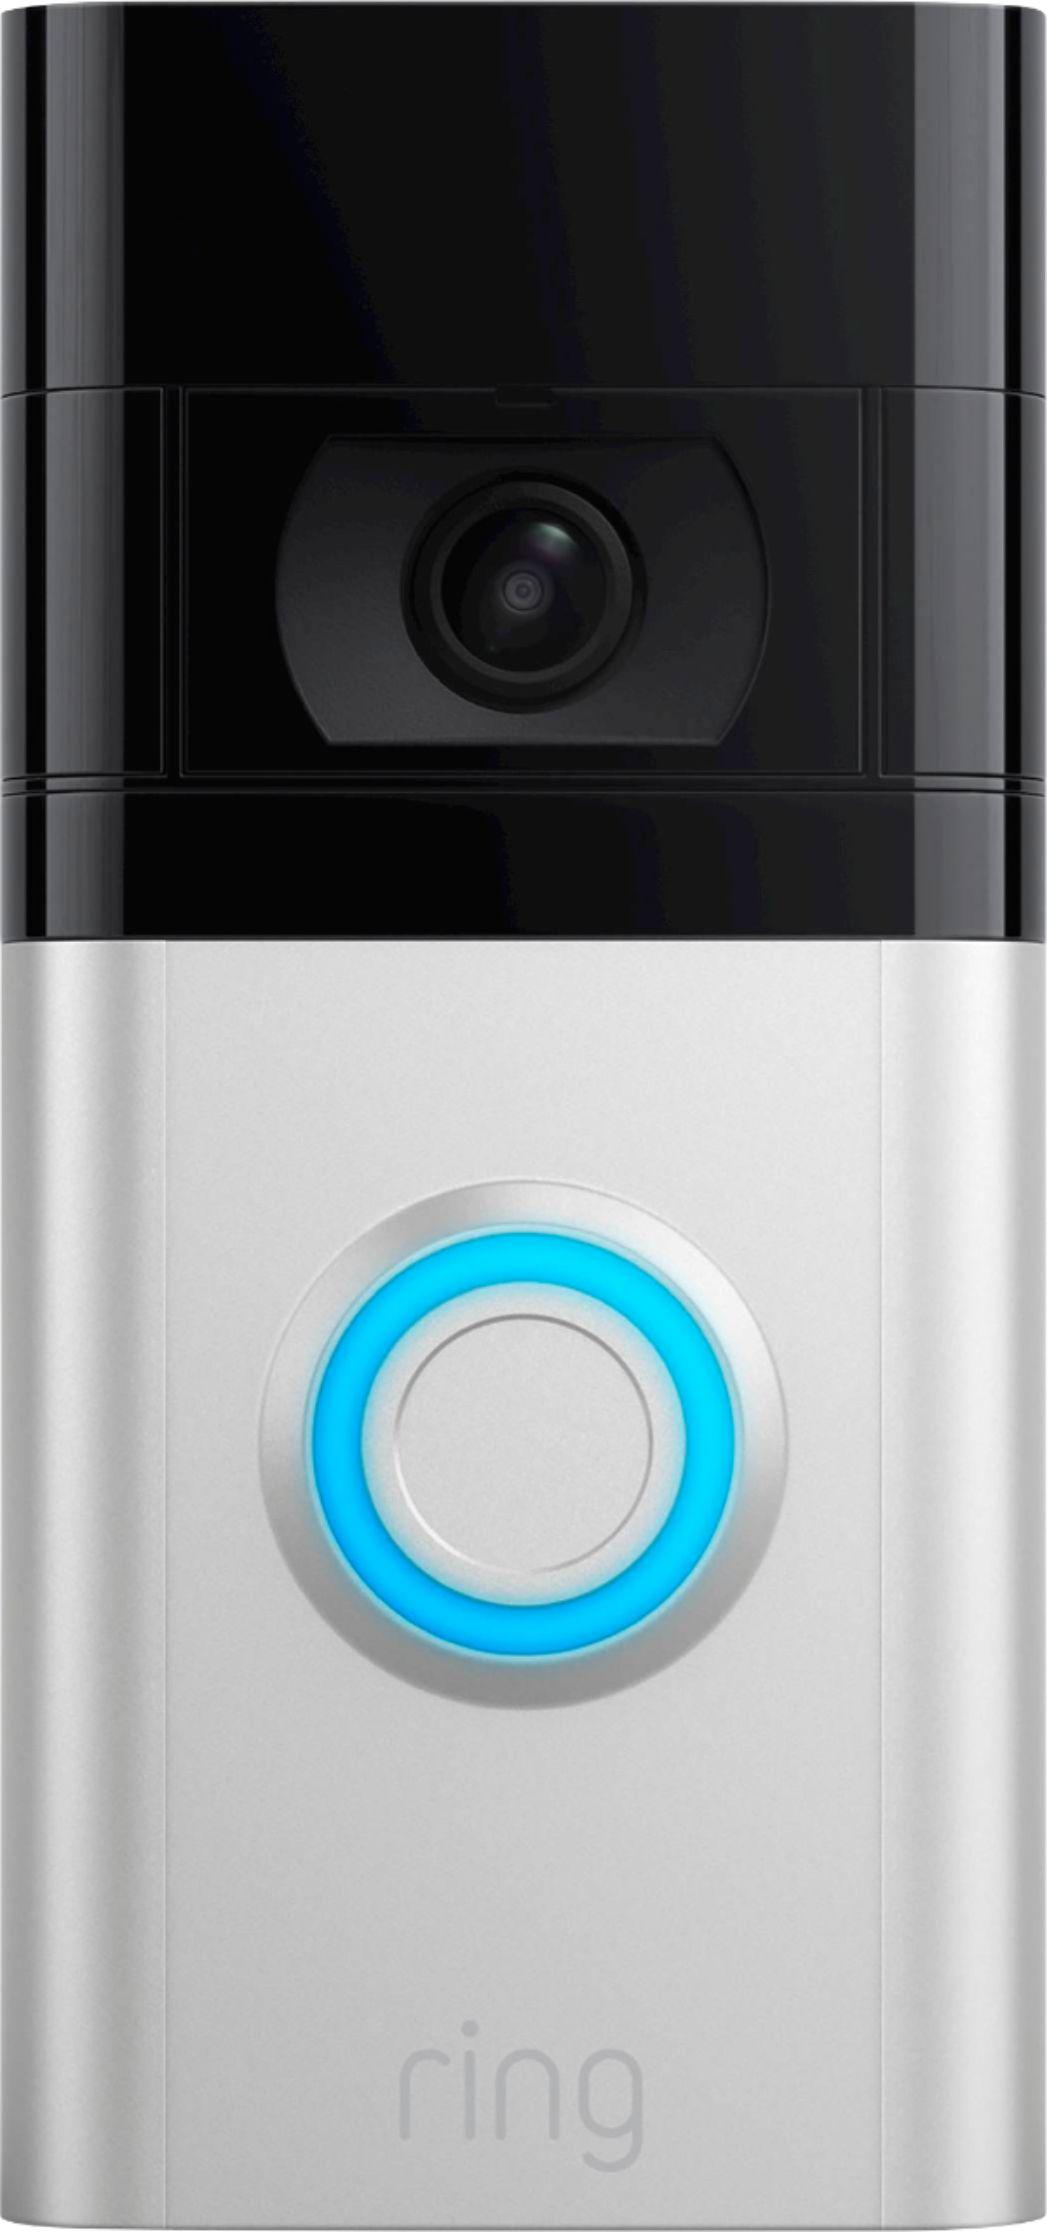 The best video doorbell camera to buy right now 5. Ring Video Doorbell 4